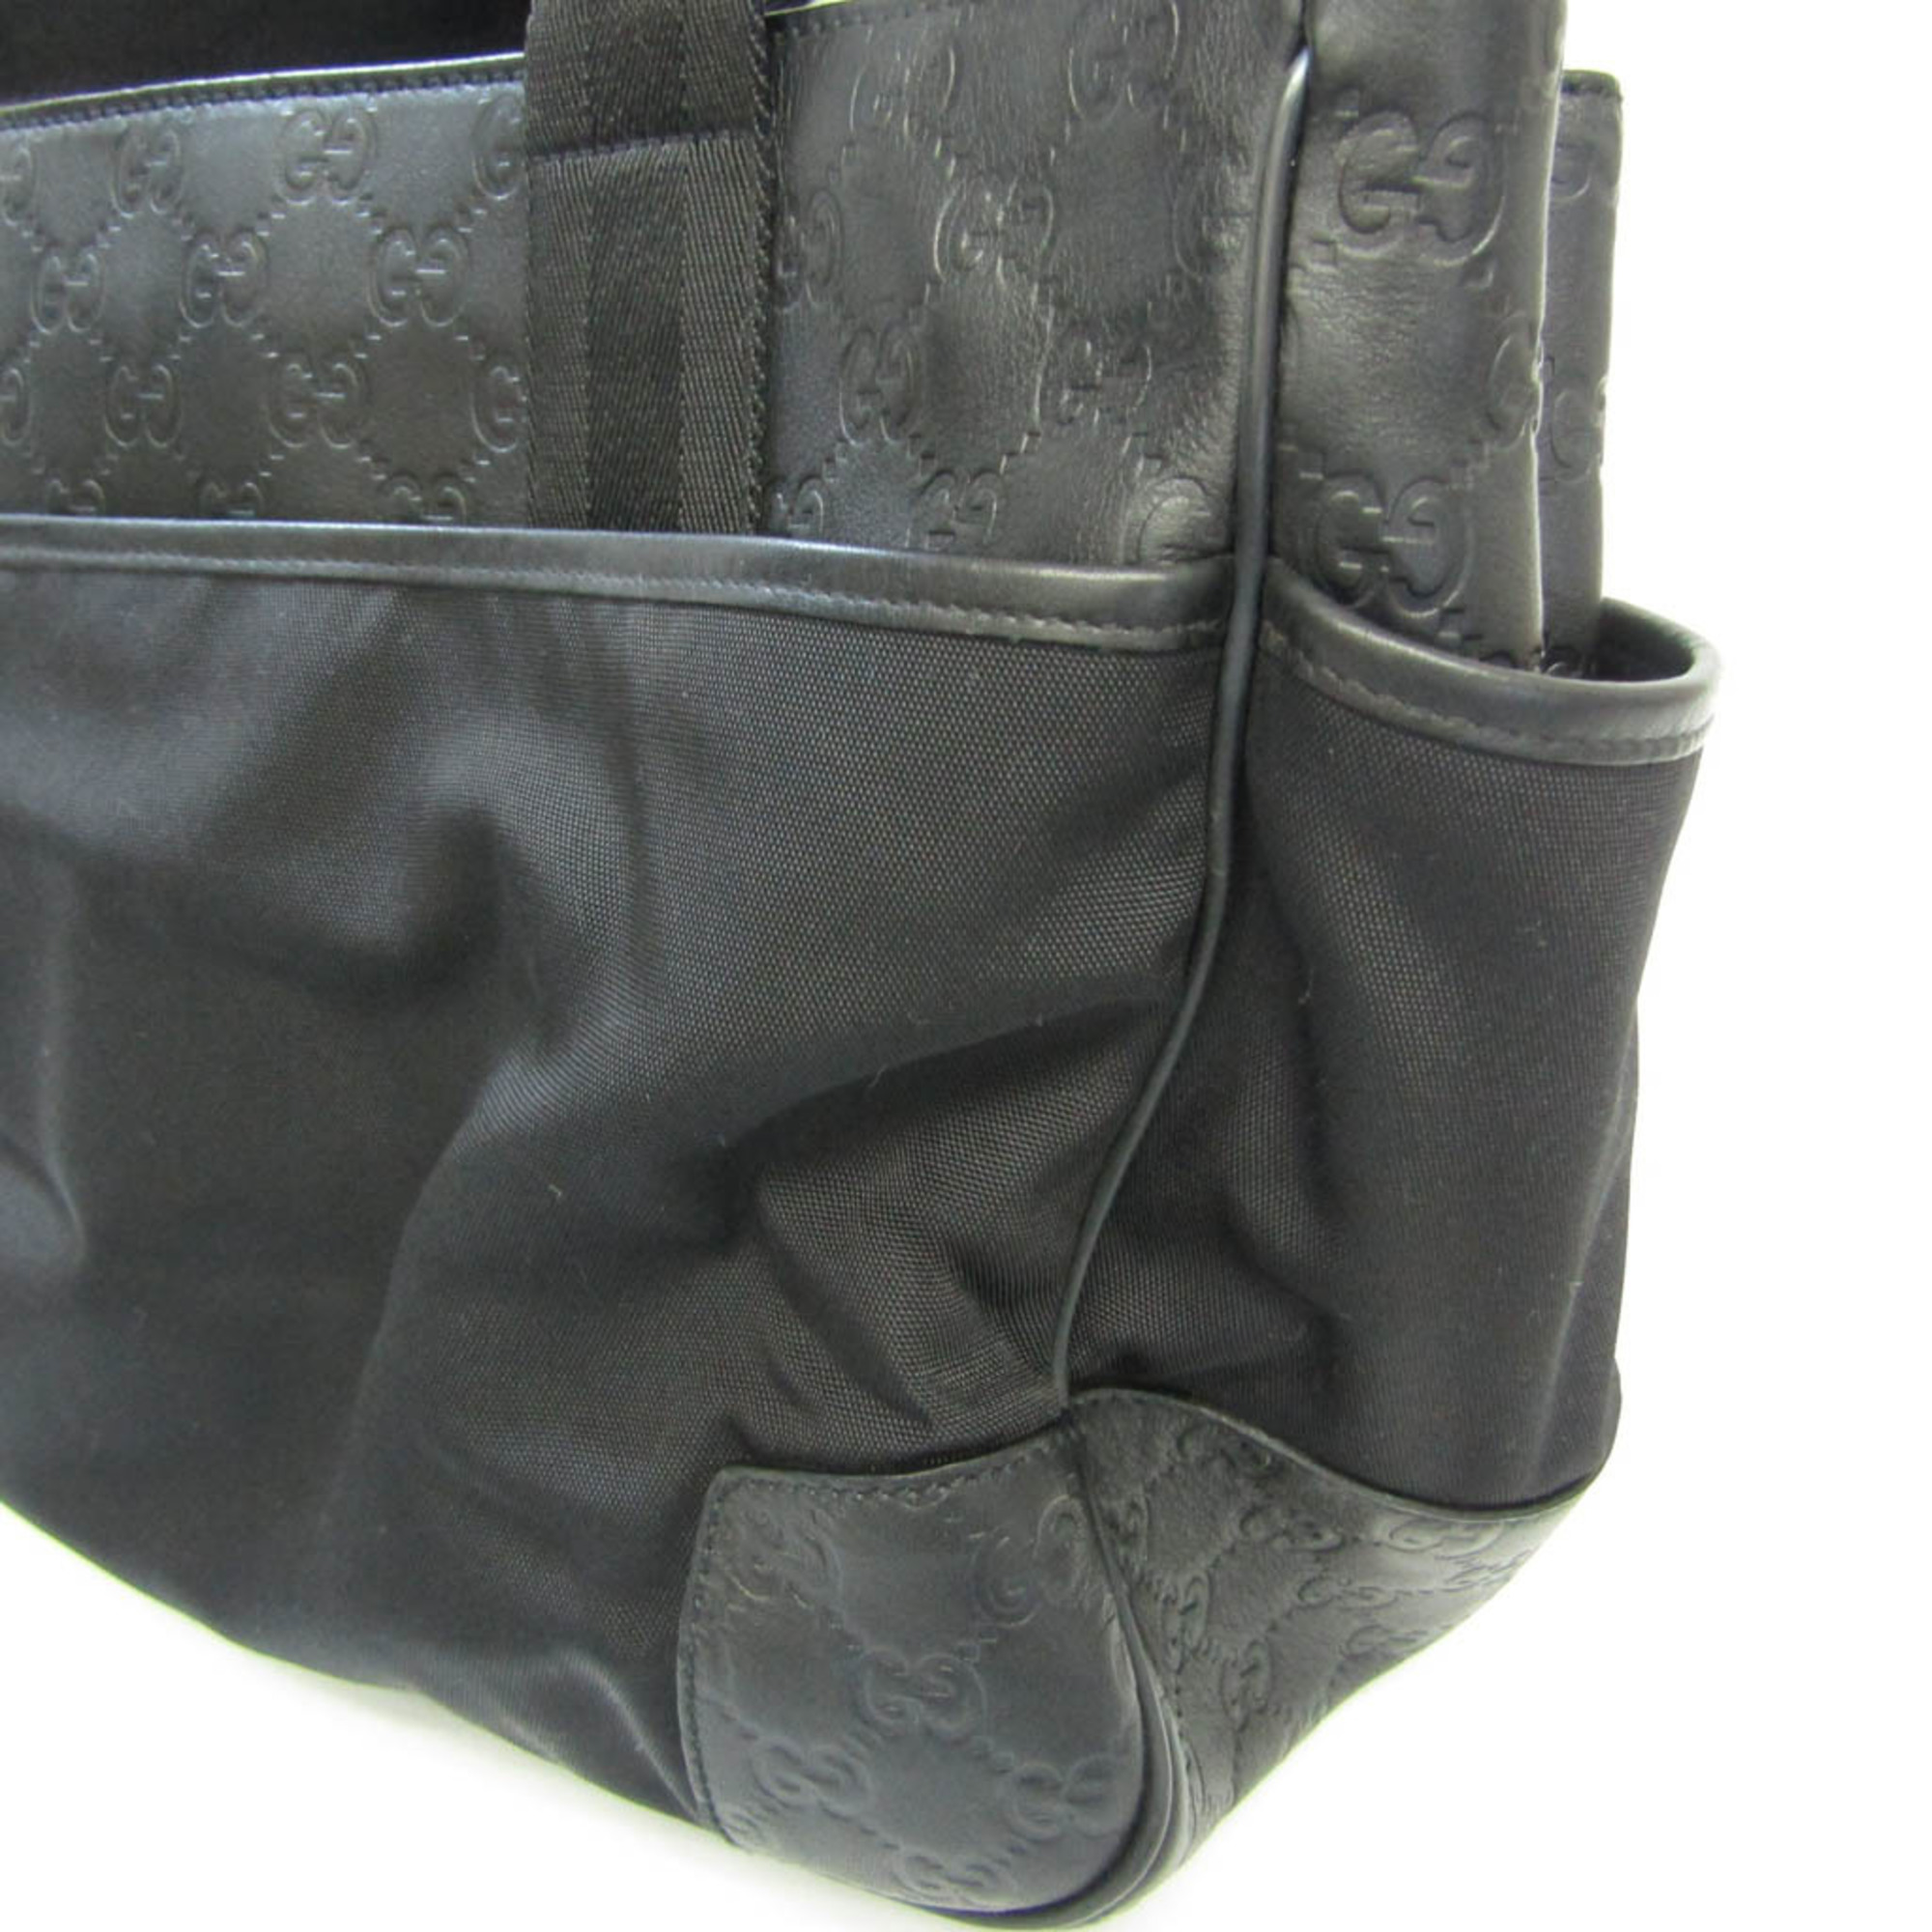 Gucci Guccissima 161770 Men,Women Leather,Nylon Canvas Tote Bag Black